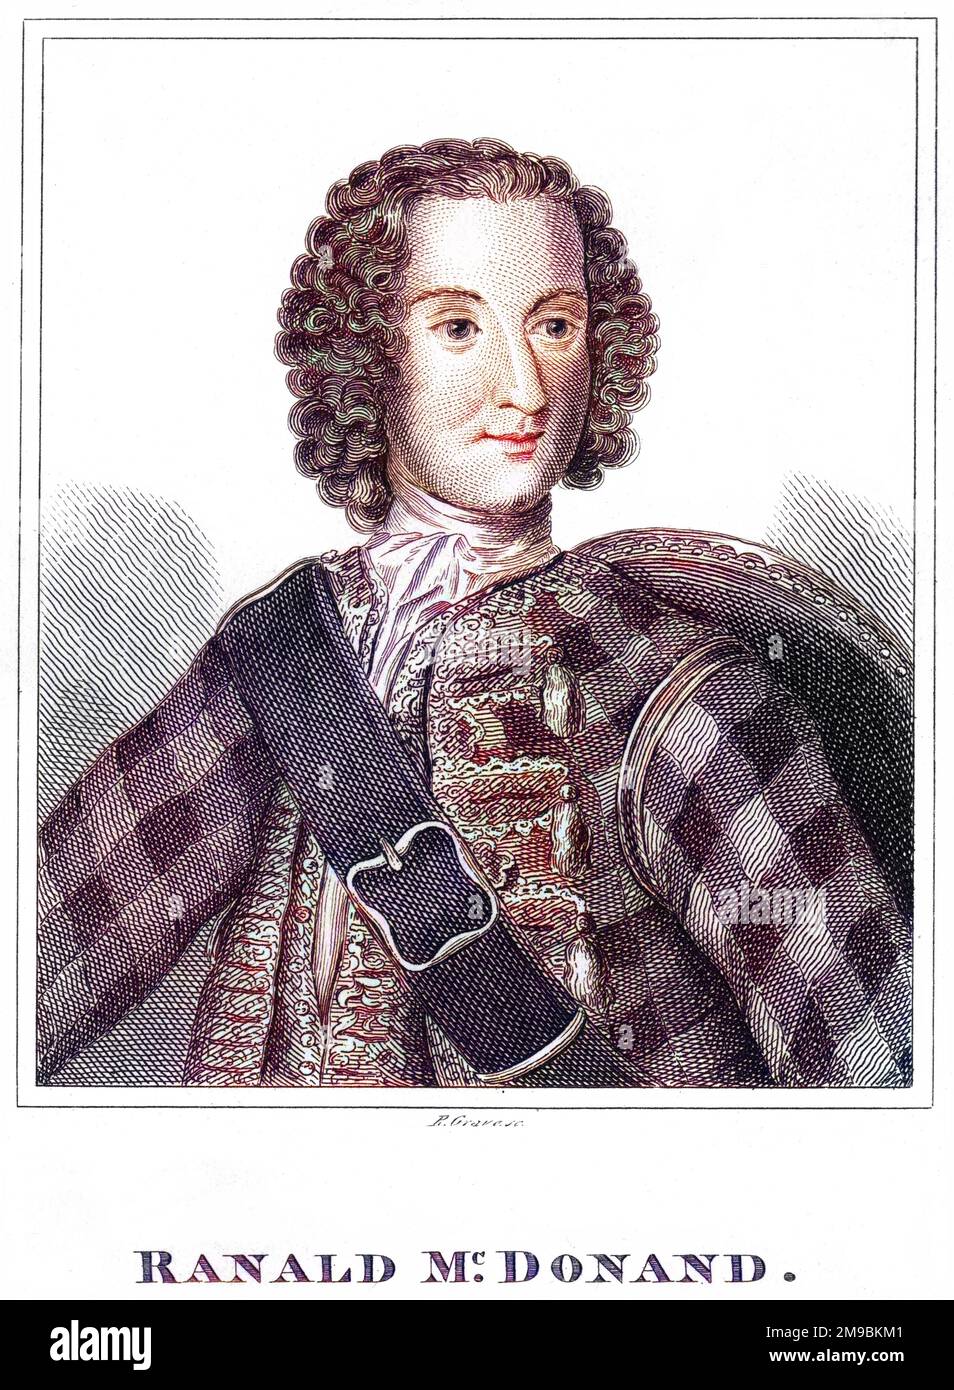 RANALD MACDONALD, schottischer Jakobitenbefürworter von Charles Edward Stuart, für den er des Verrats verurteilt und enthauptet wurde. Stockfoto